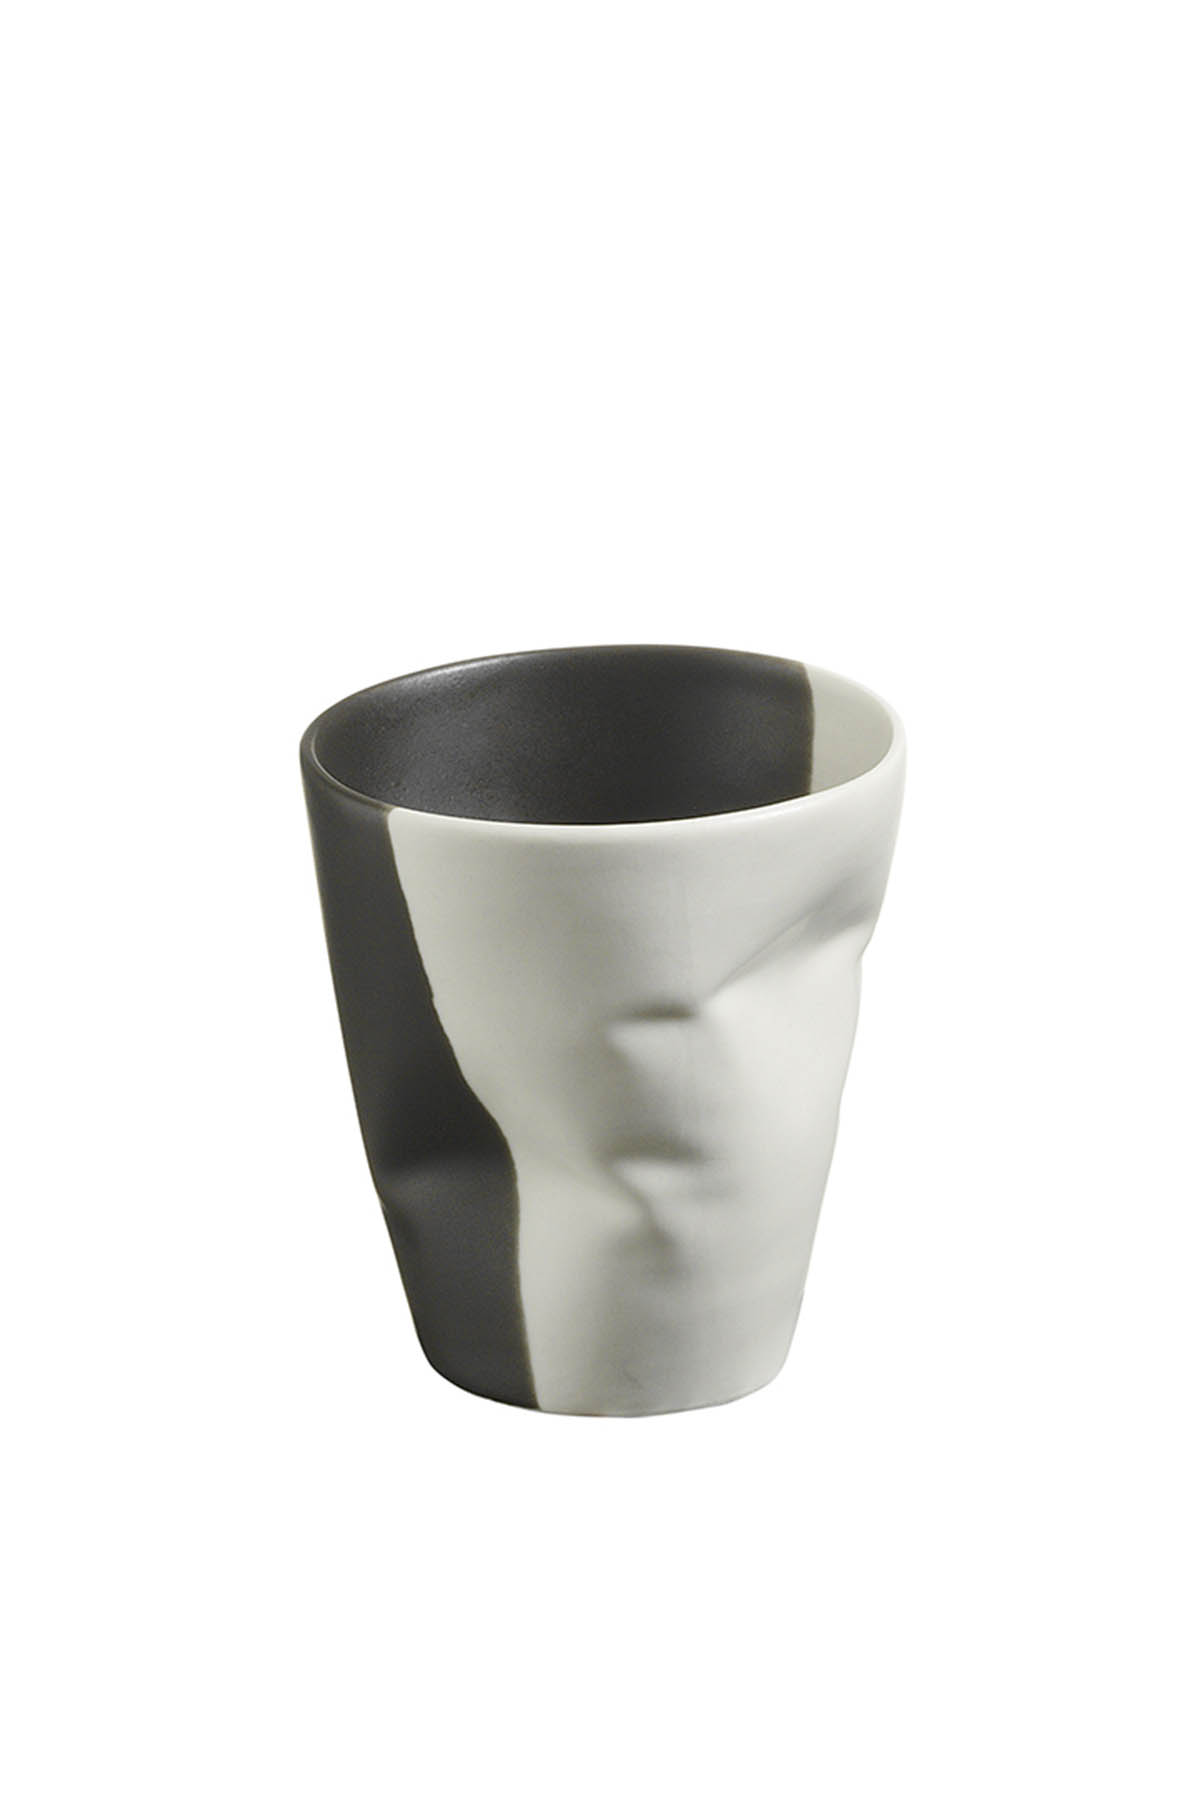 Kütahya Porselen Crash 2 Kişilik Espresso Kahve Seti Krem/Siyah